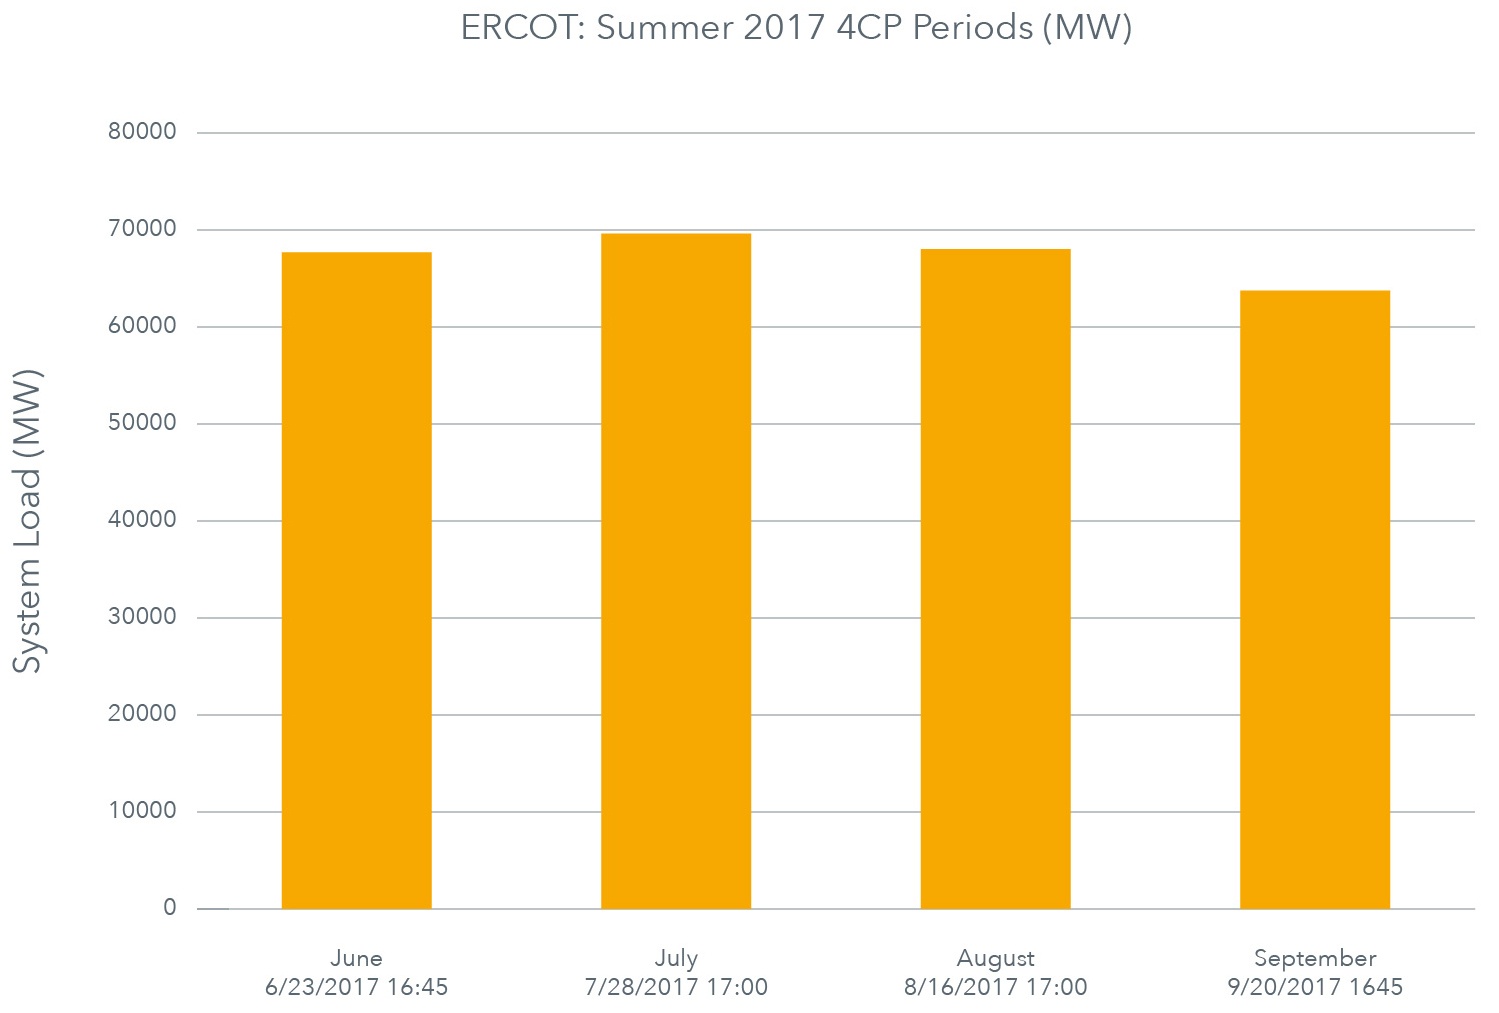 ERCOT Summer 2017 4CP periods AI